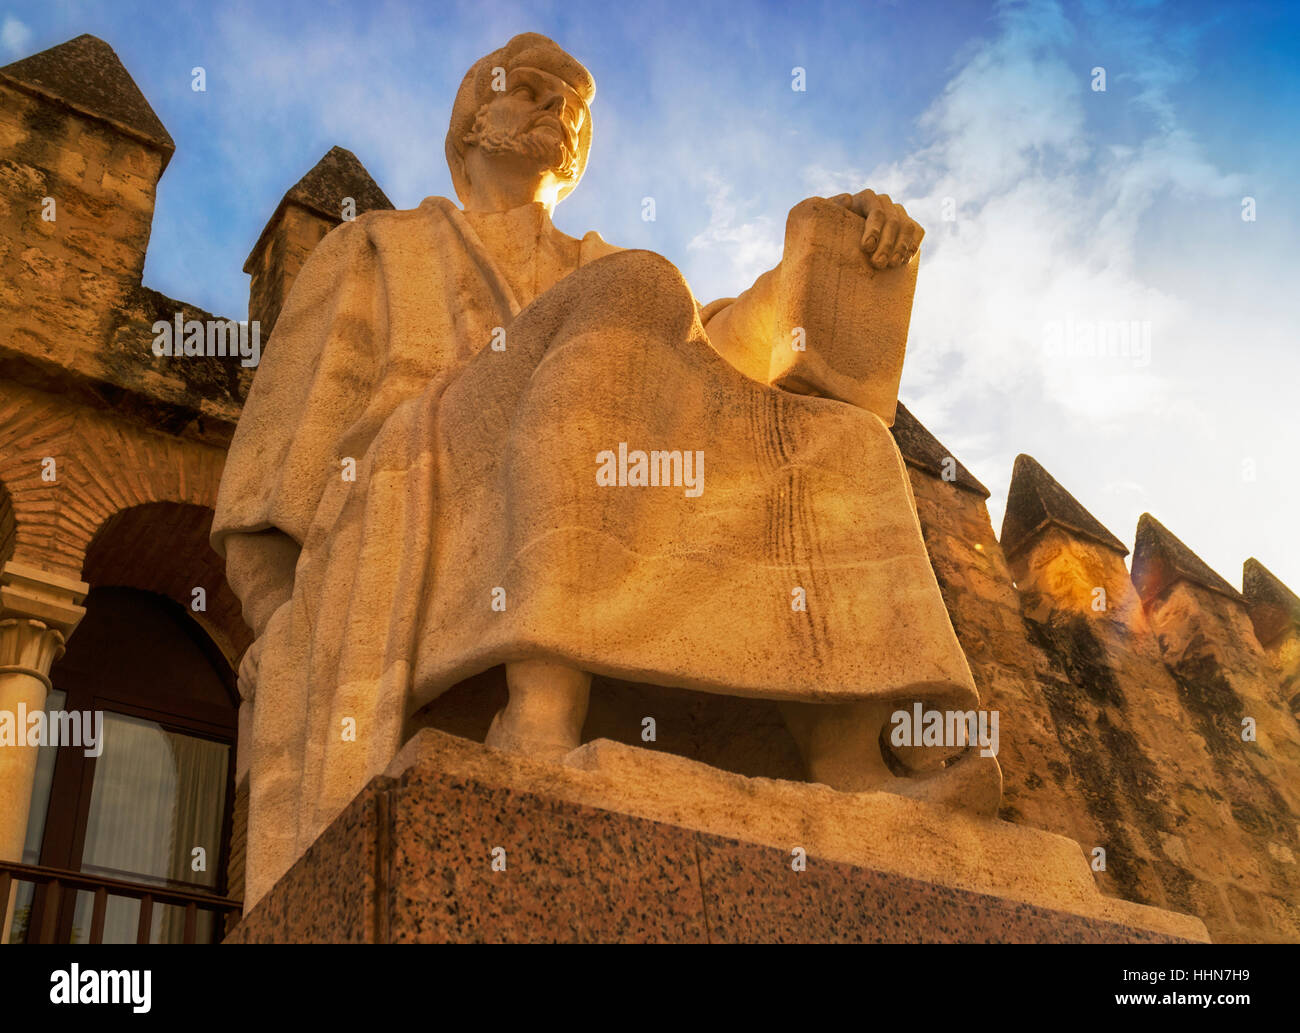 Cordoba, Cordoue, Andalousie, province du sud de l'Espagne. Statue d'Averroès, grand penseur musulman né à Cordoue, mort 1126 Marrakech, Maroc, 1198. Ville wa Banque D'Images